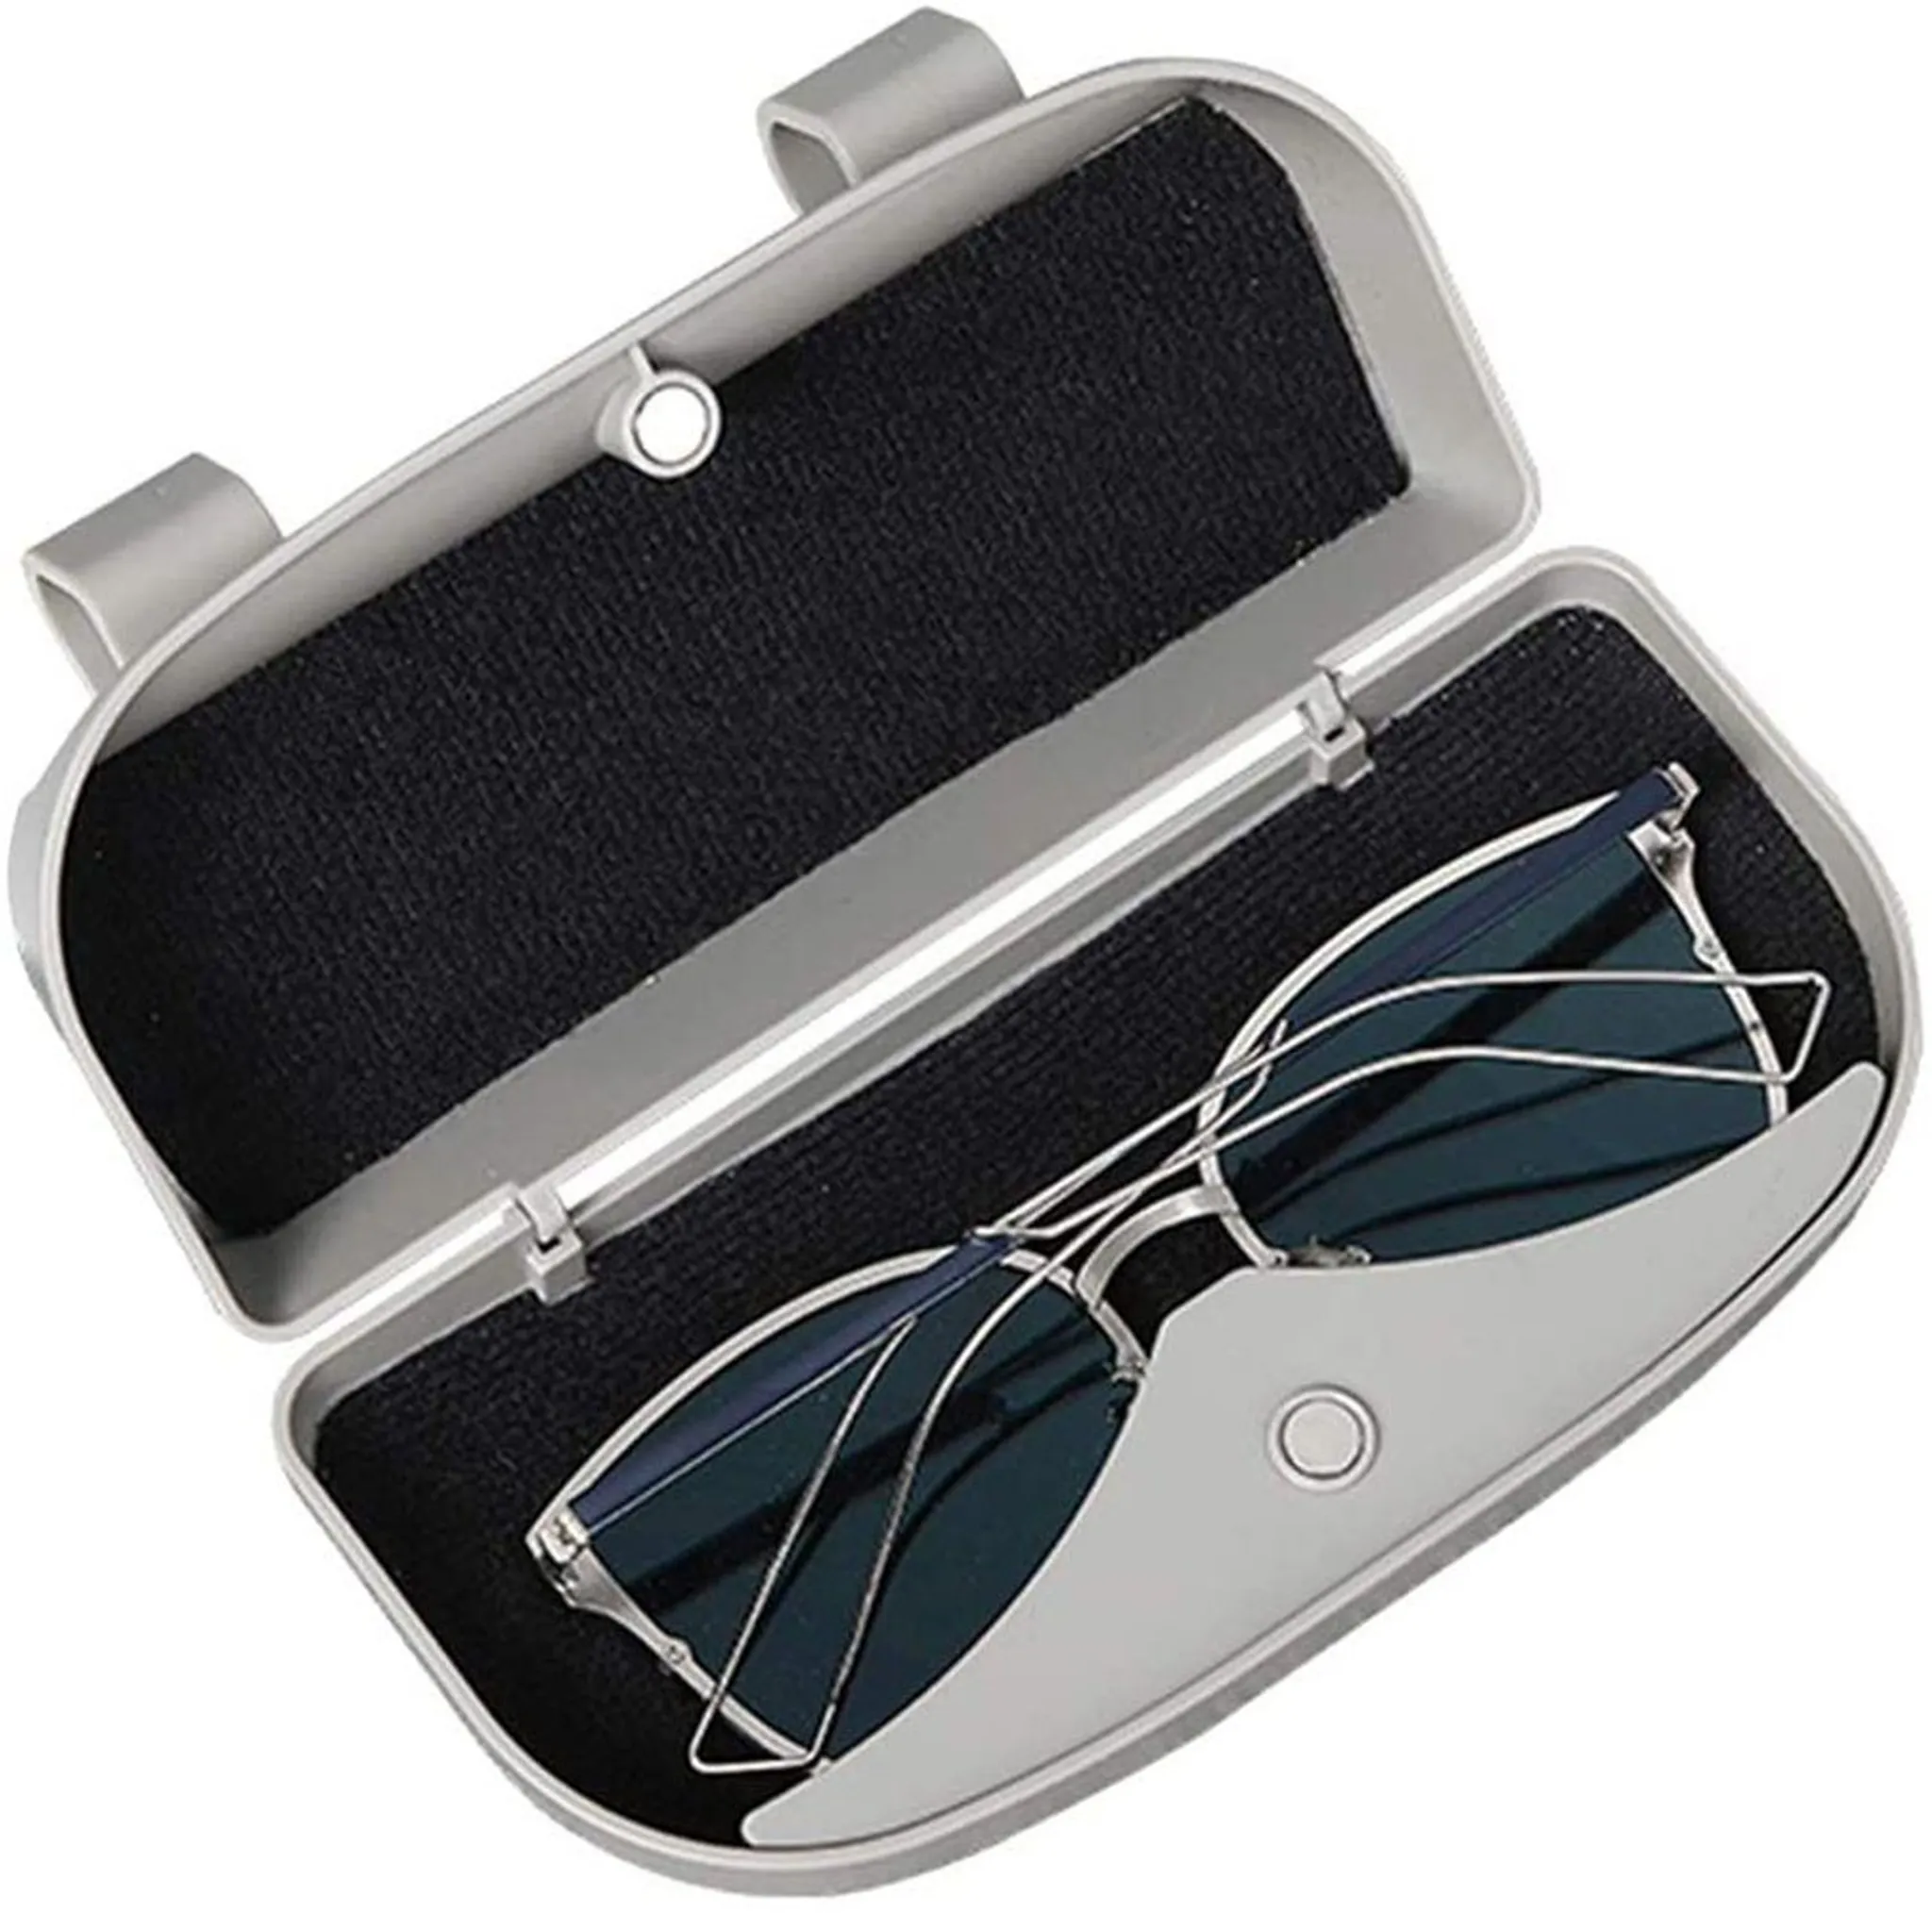 Miokycl Auto Brillenetui für Auto Sonnenblende Brillenhalter Universal Automotive PU Brillenhalter Schutzbox Clip Brillen Hartschalen-Aufbewahrungsorganisator 